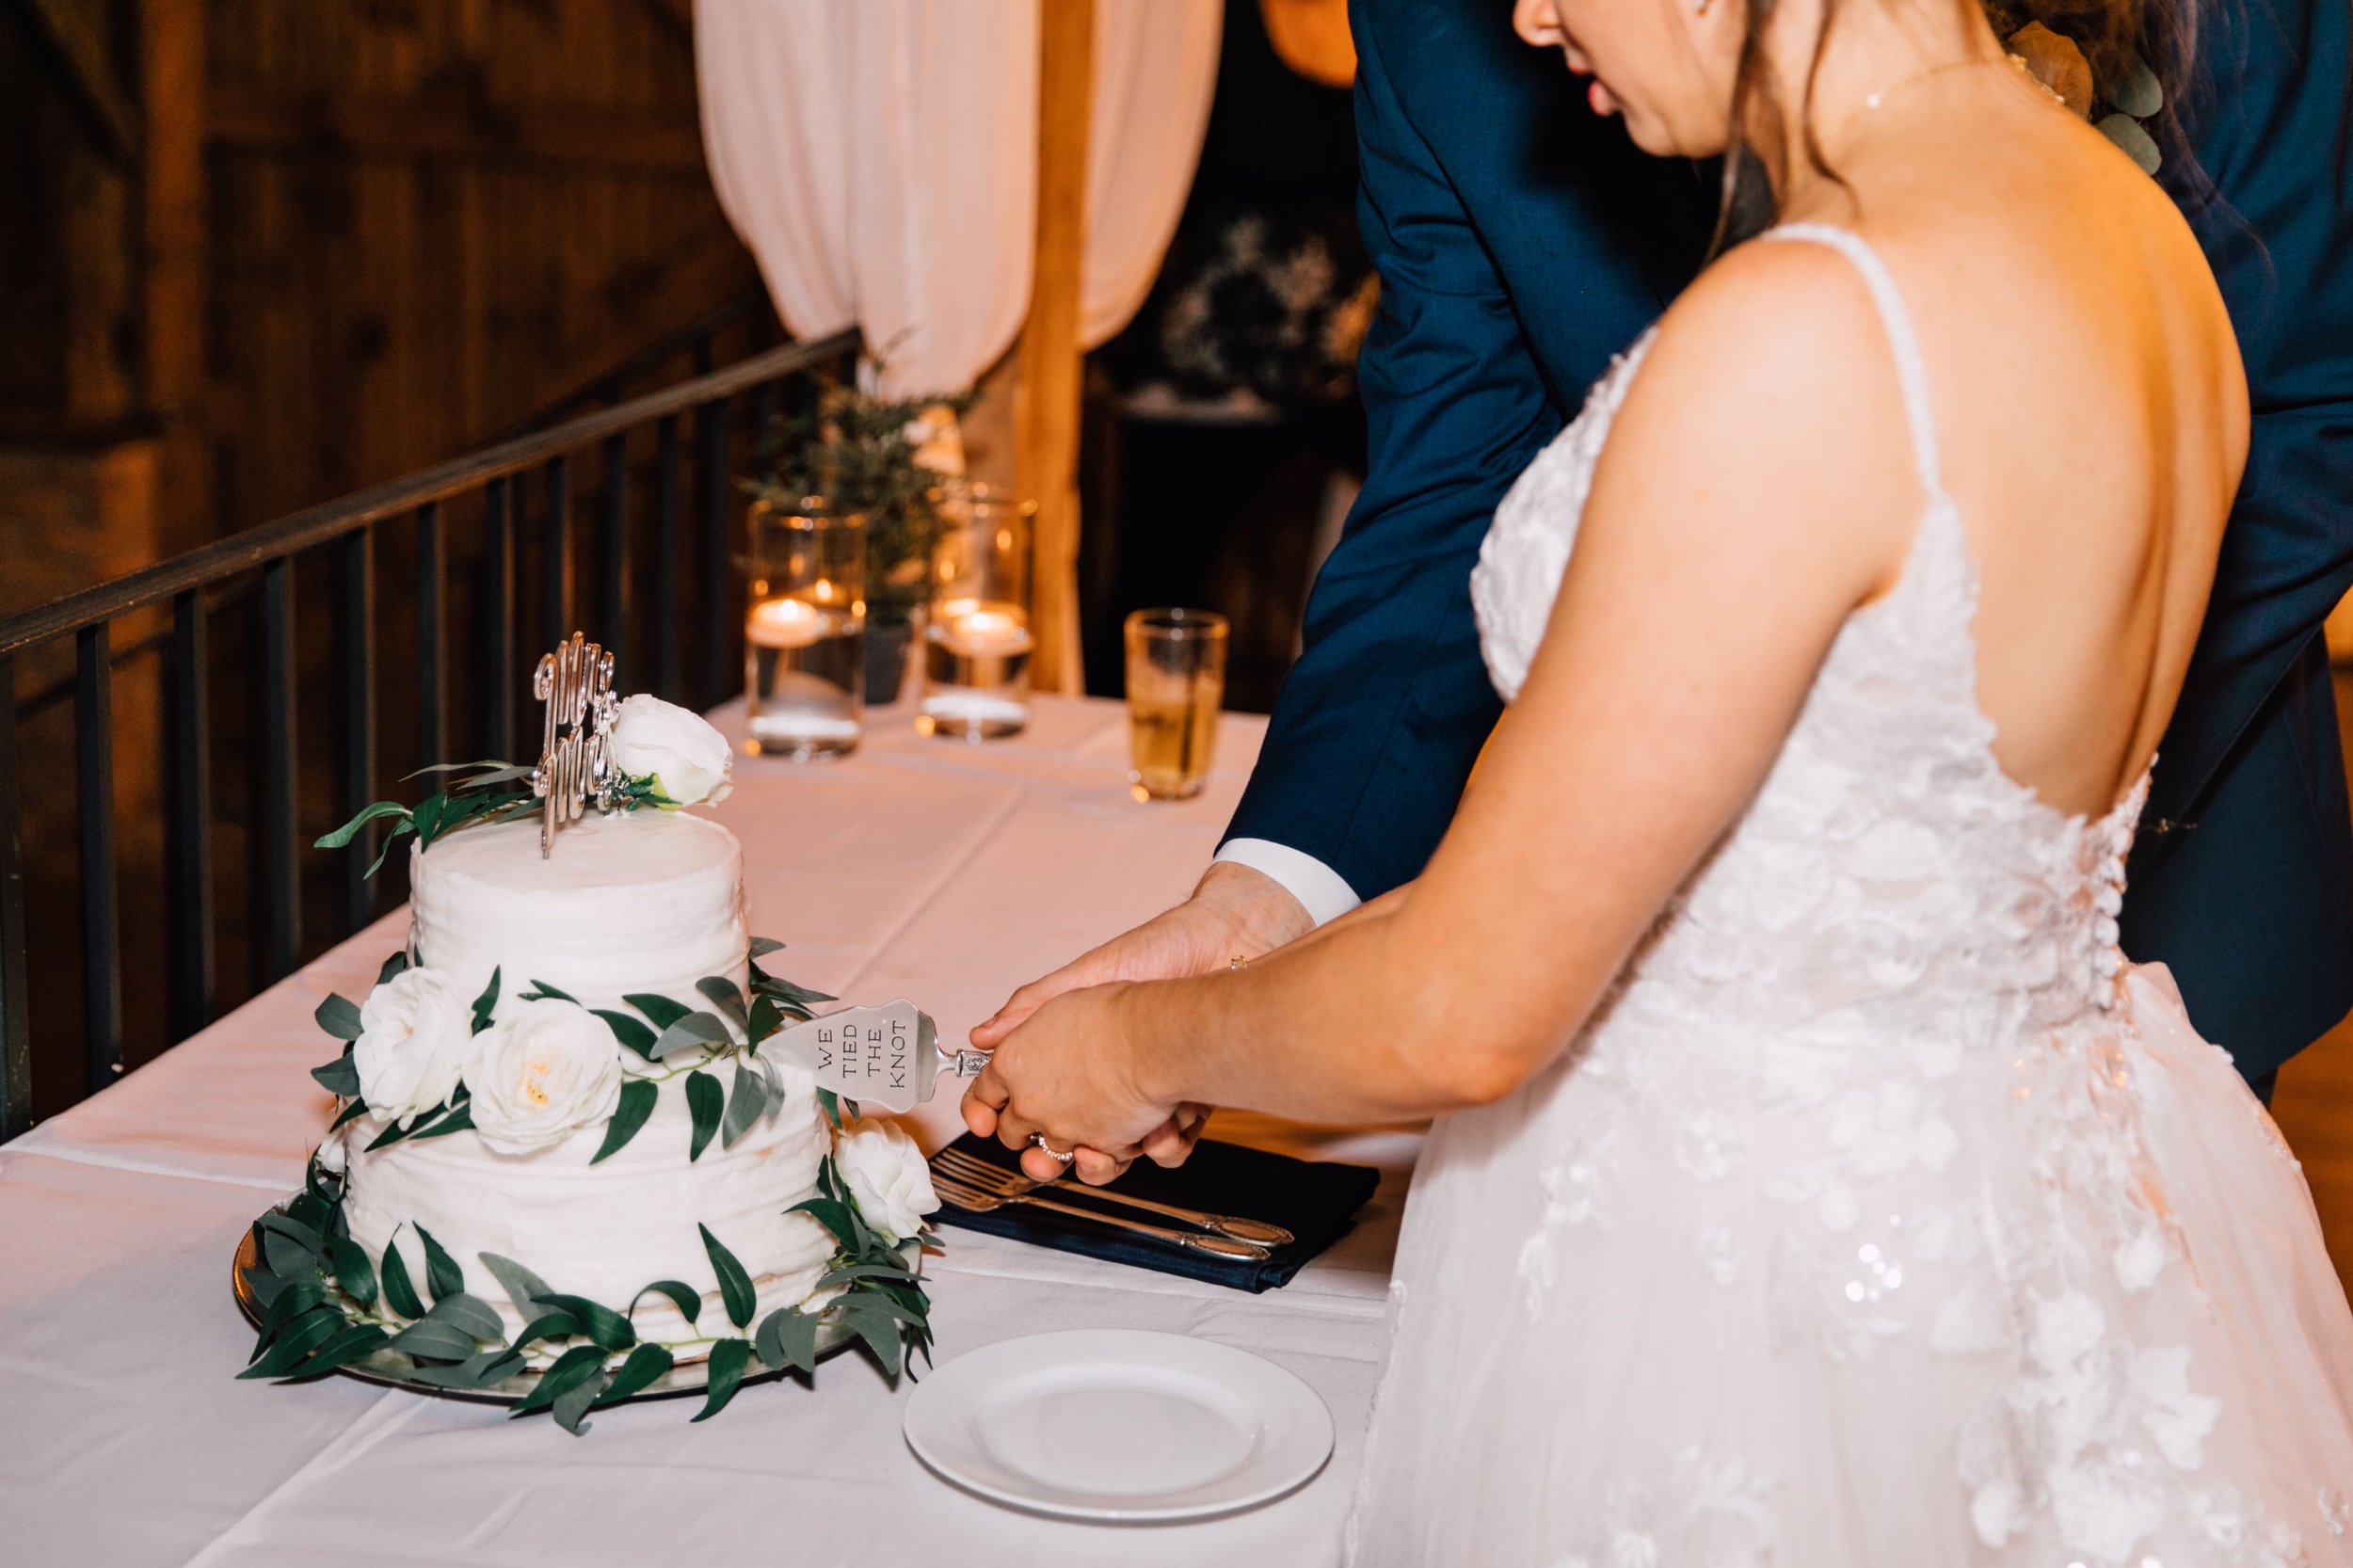  the bride and groom cut their wedding cake at their elegant barn wedding 